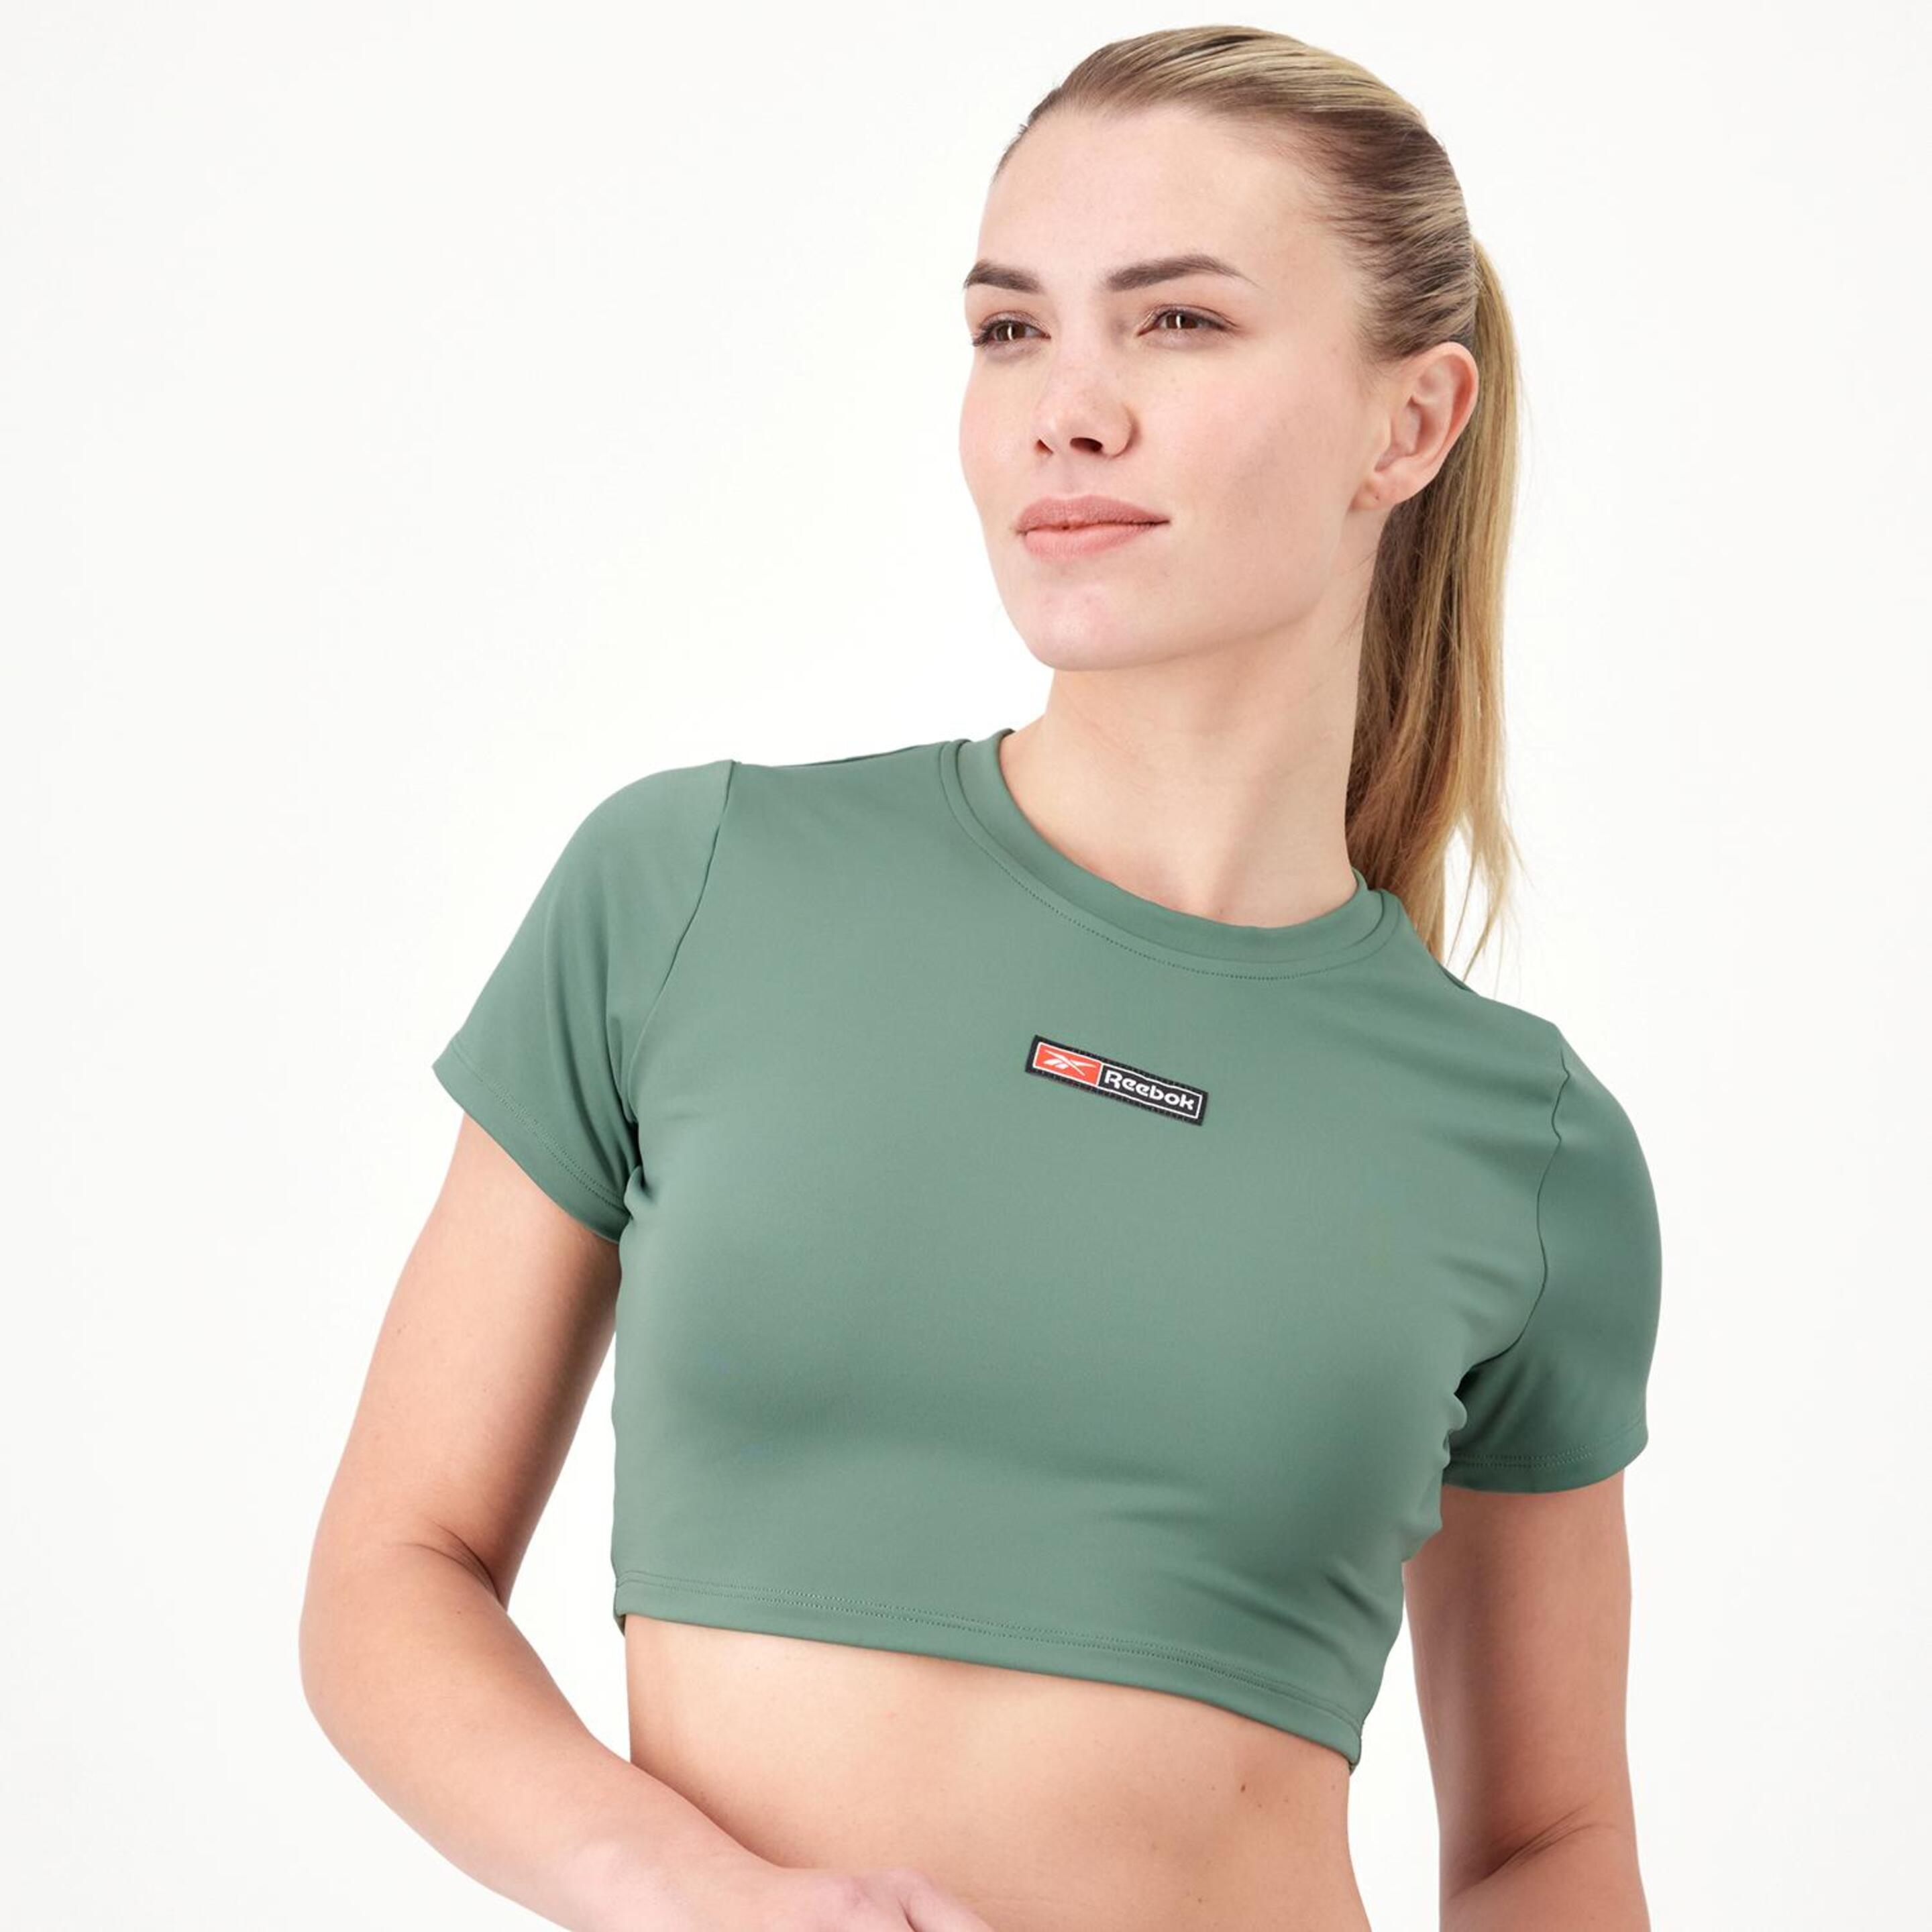 Reebok Performance - verde - T-shirt Crop Top Mulher